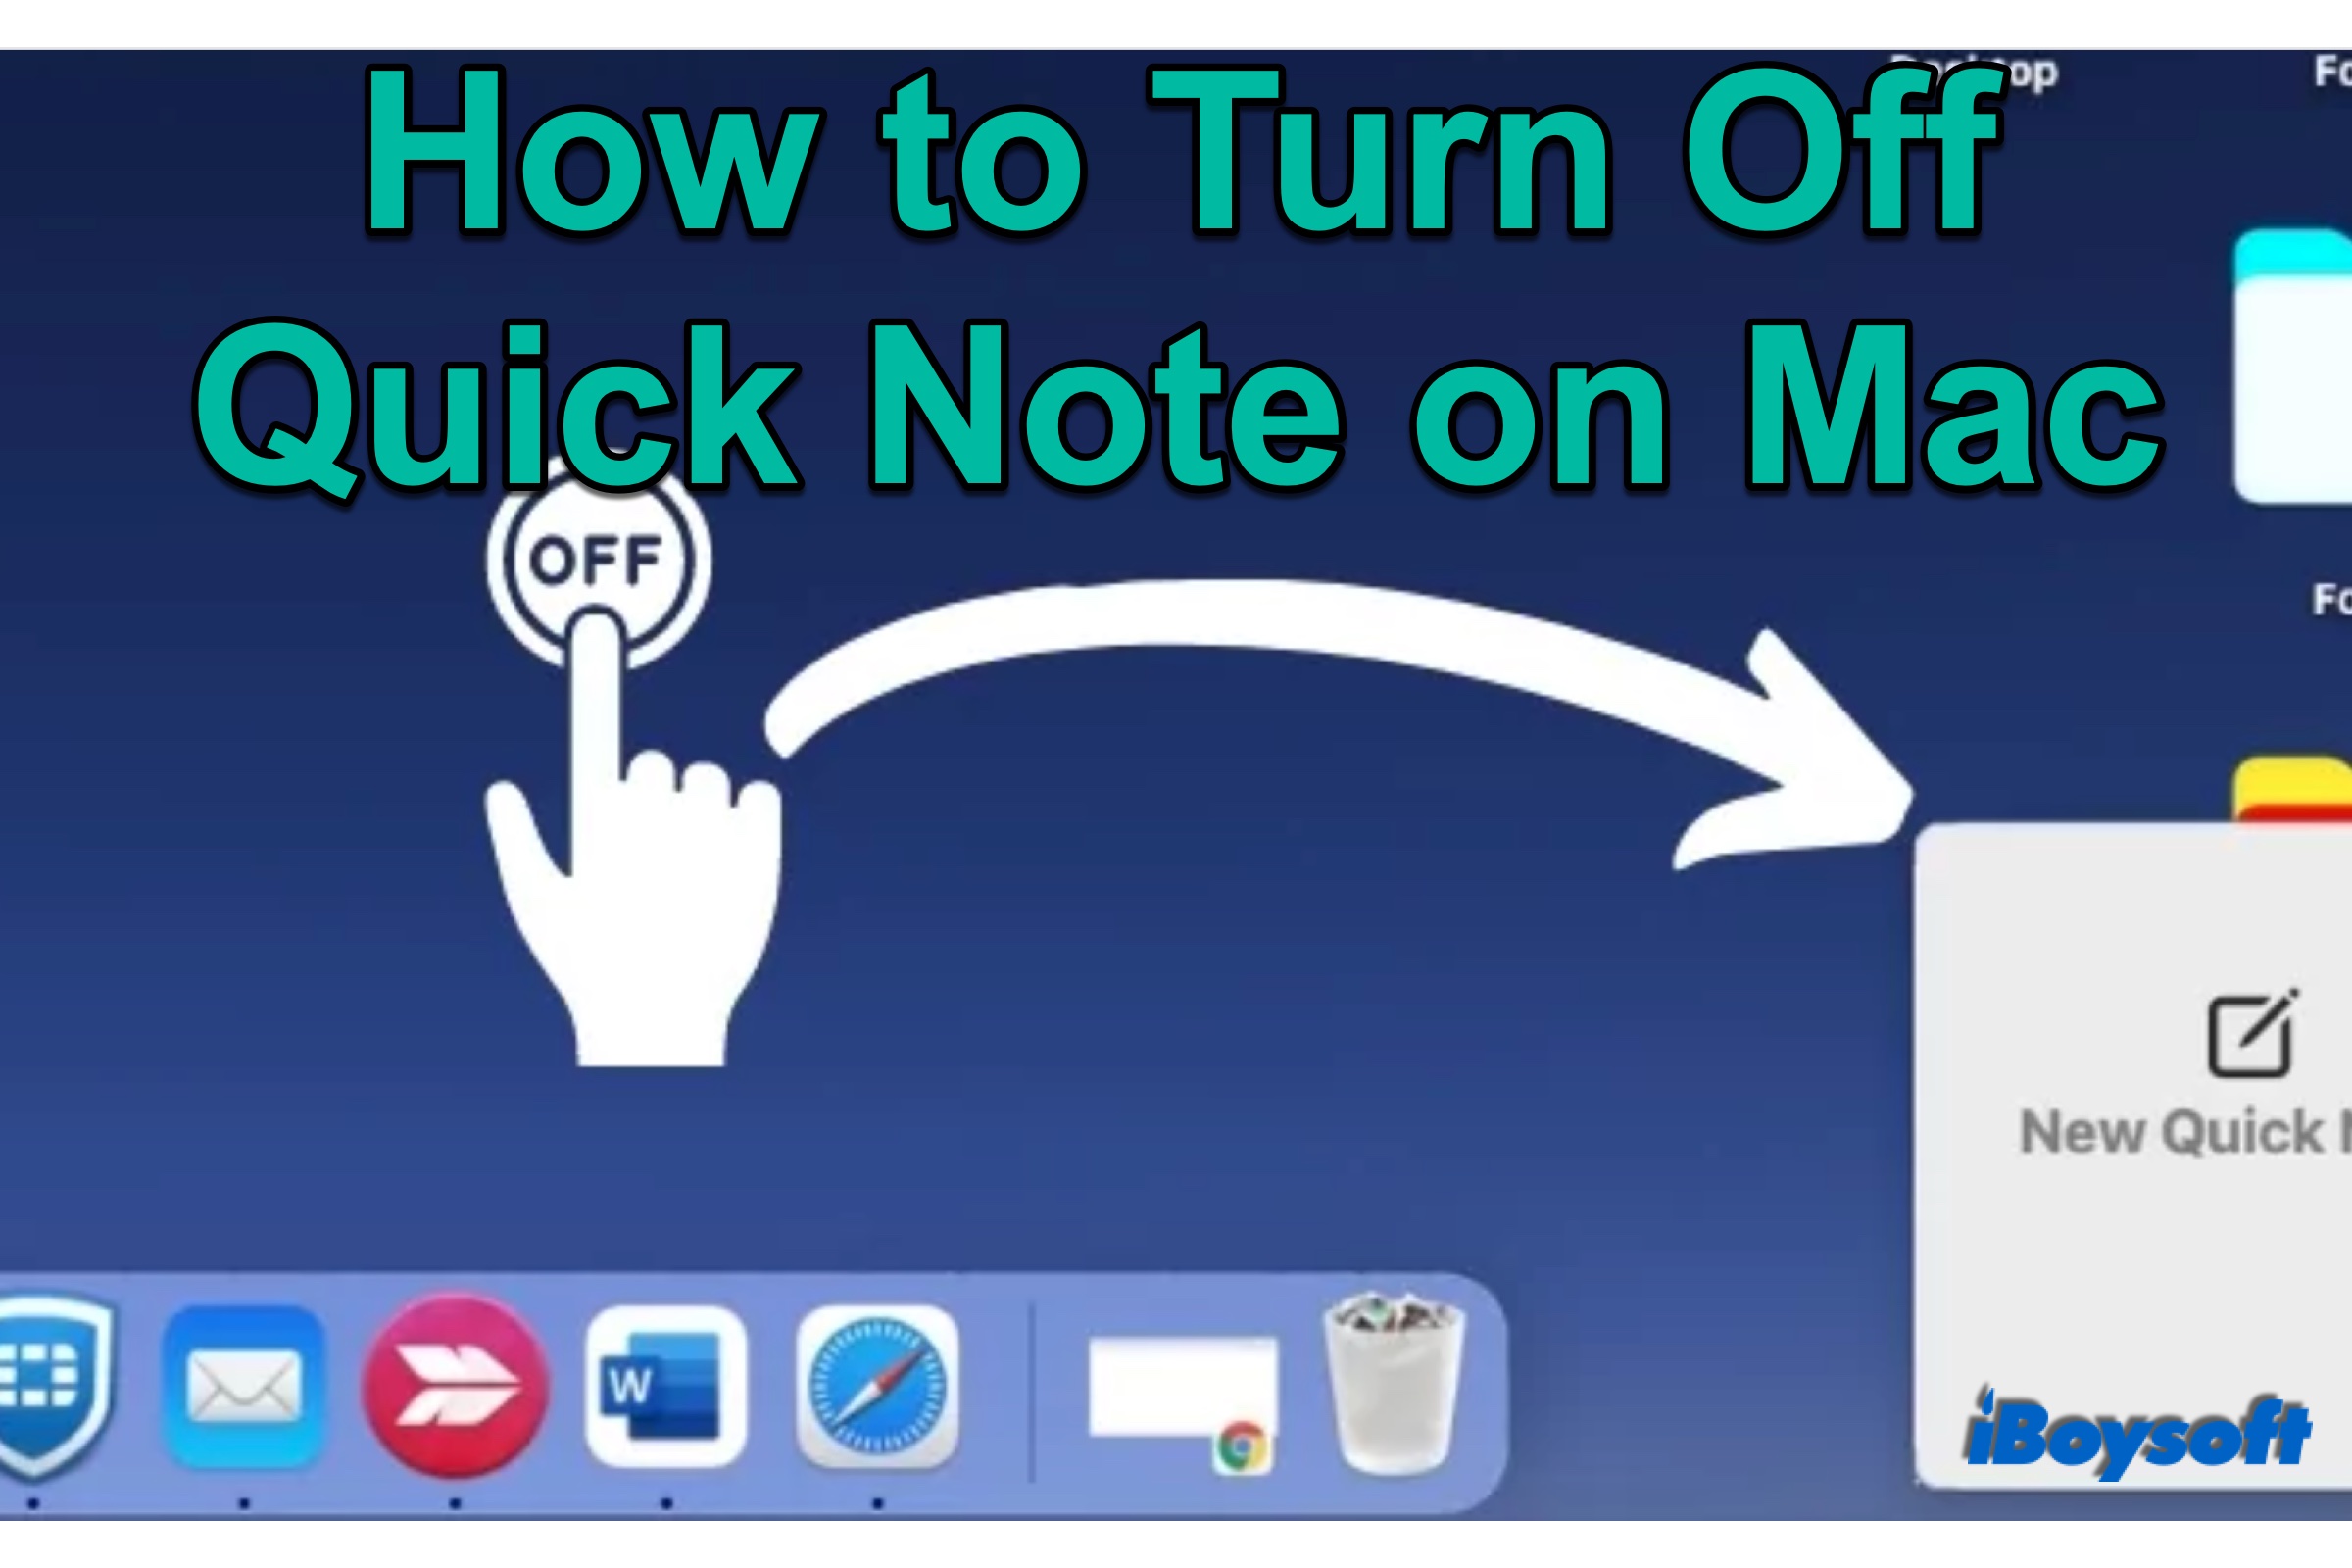 Mac turn off Quick Note